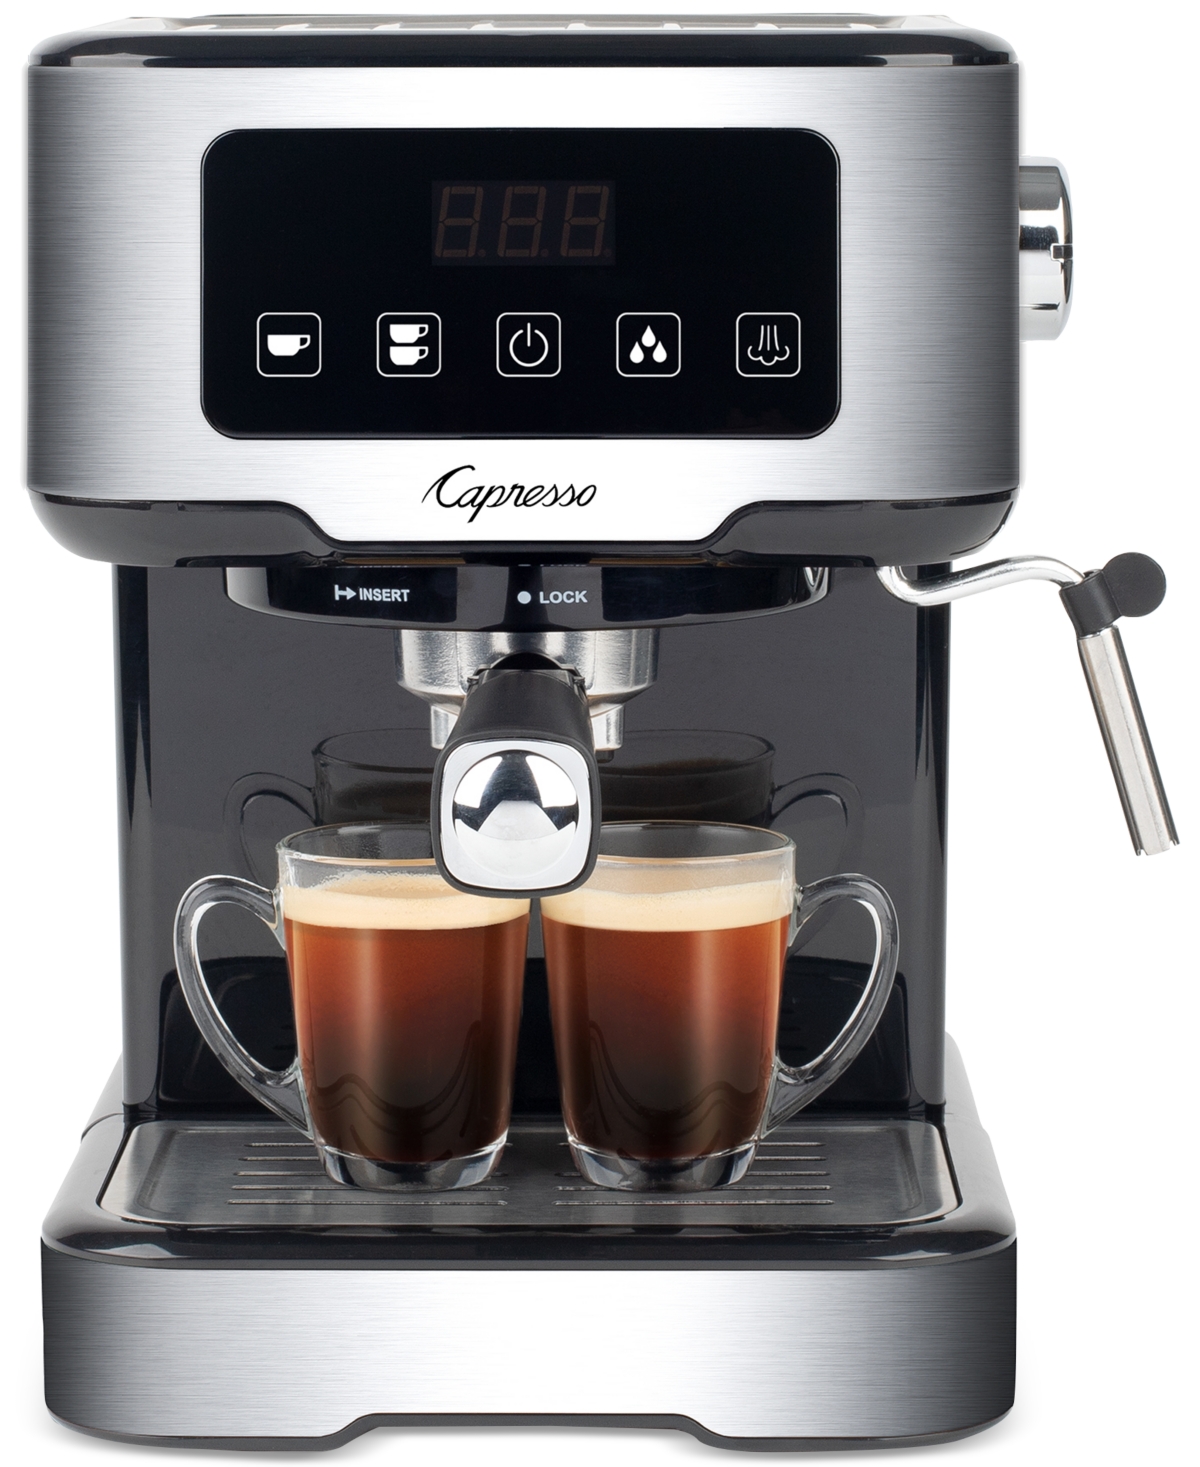 Capresso Espresso & Cappuccino Machine